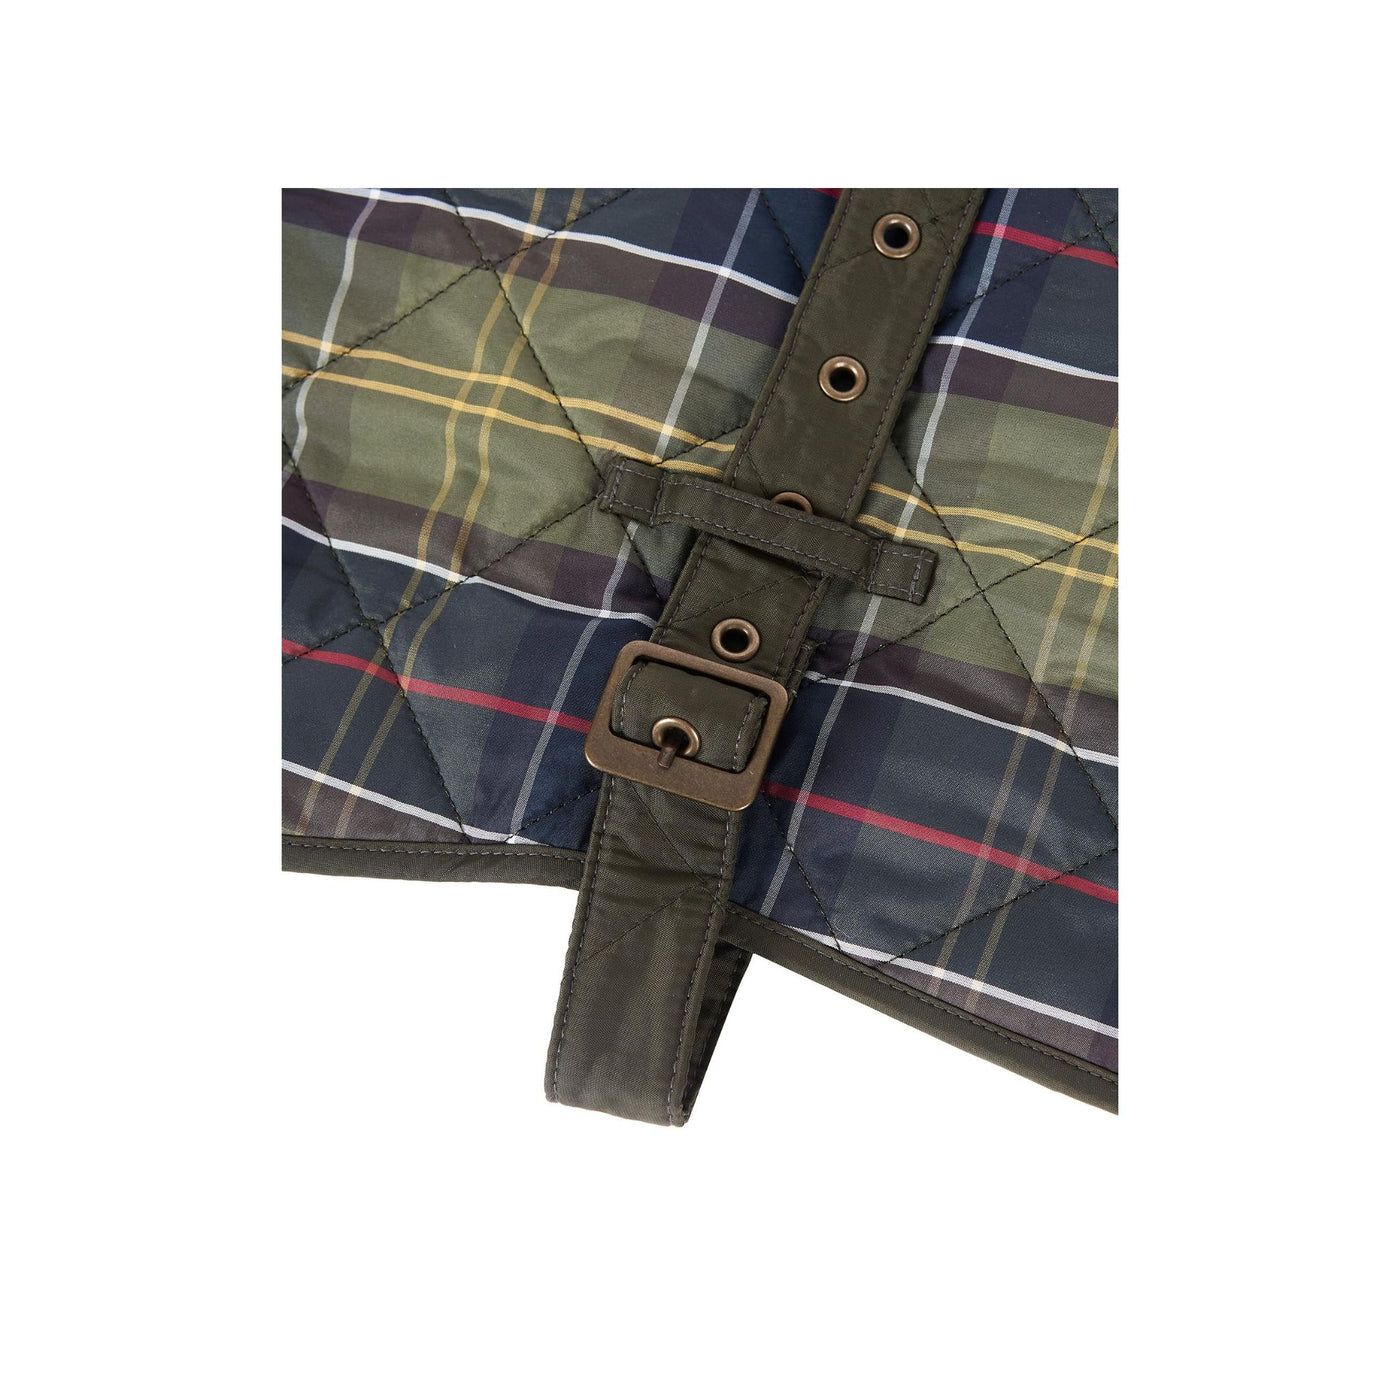 Immagine dettaglio ravvicinato cintura regolabile con fori